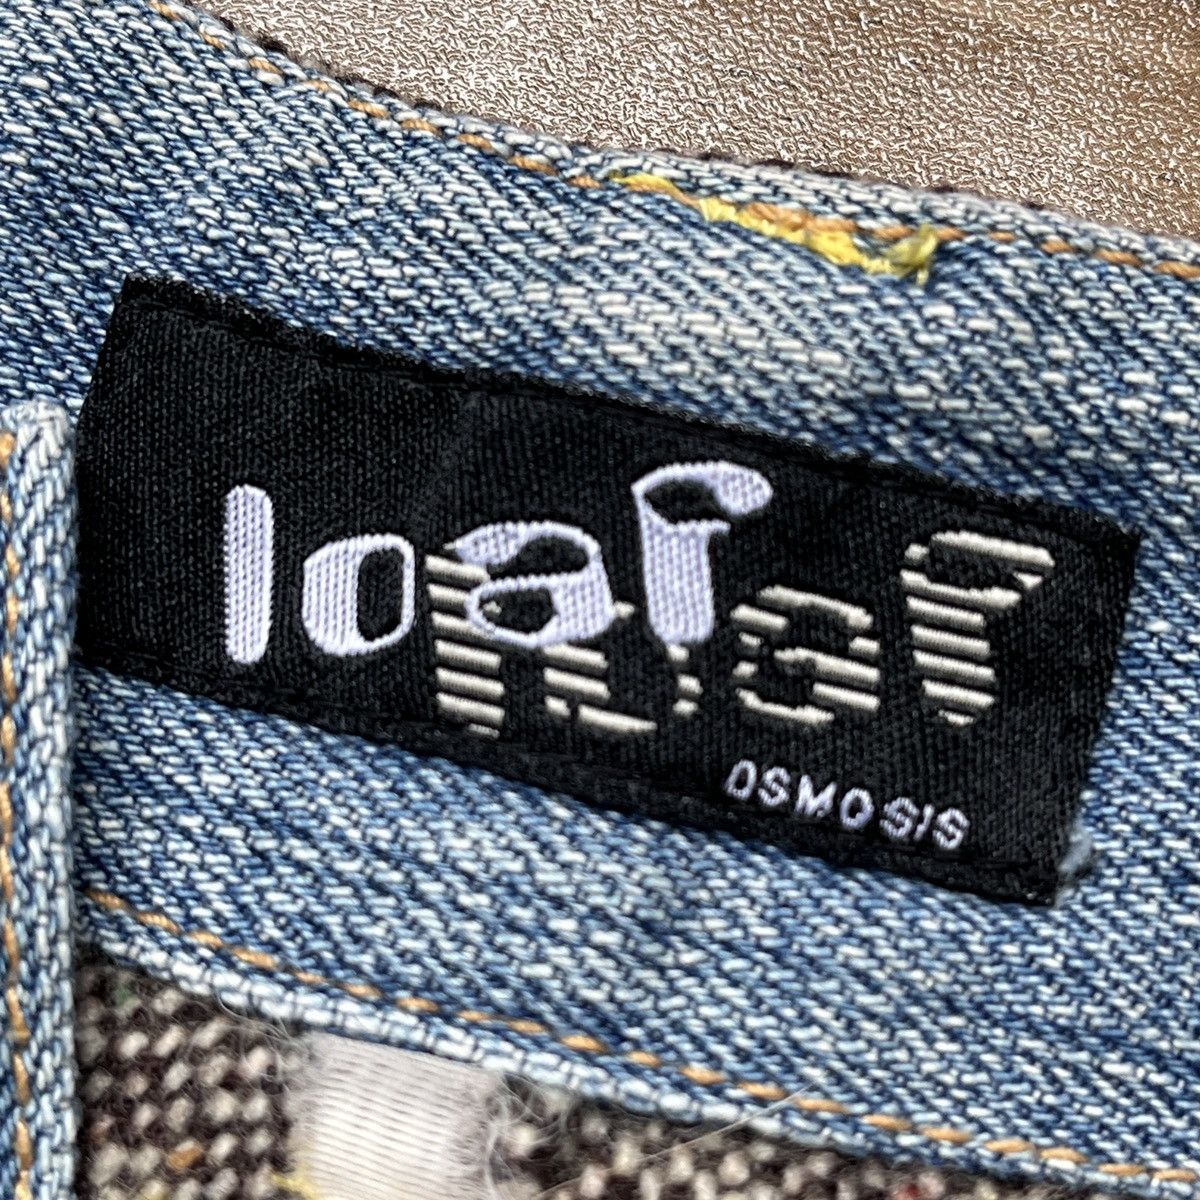 Japanese Brand - Osmosis Loaf Denim Jeans 3 Quarter Japan - 7